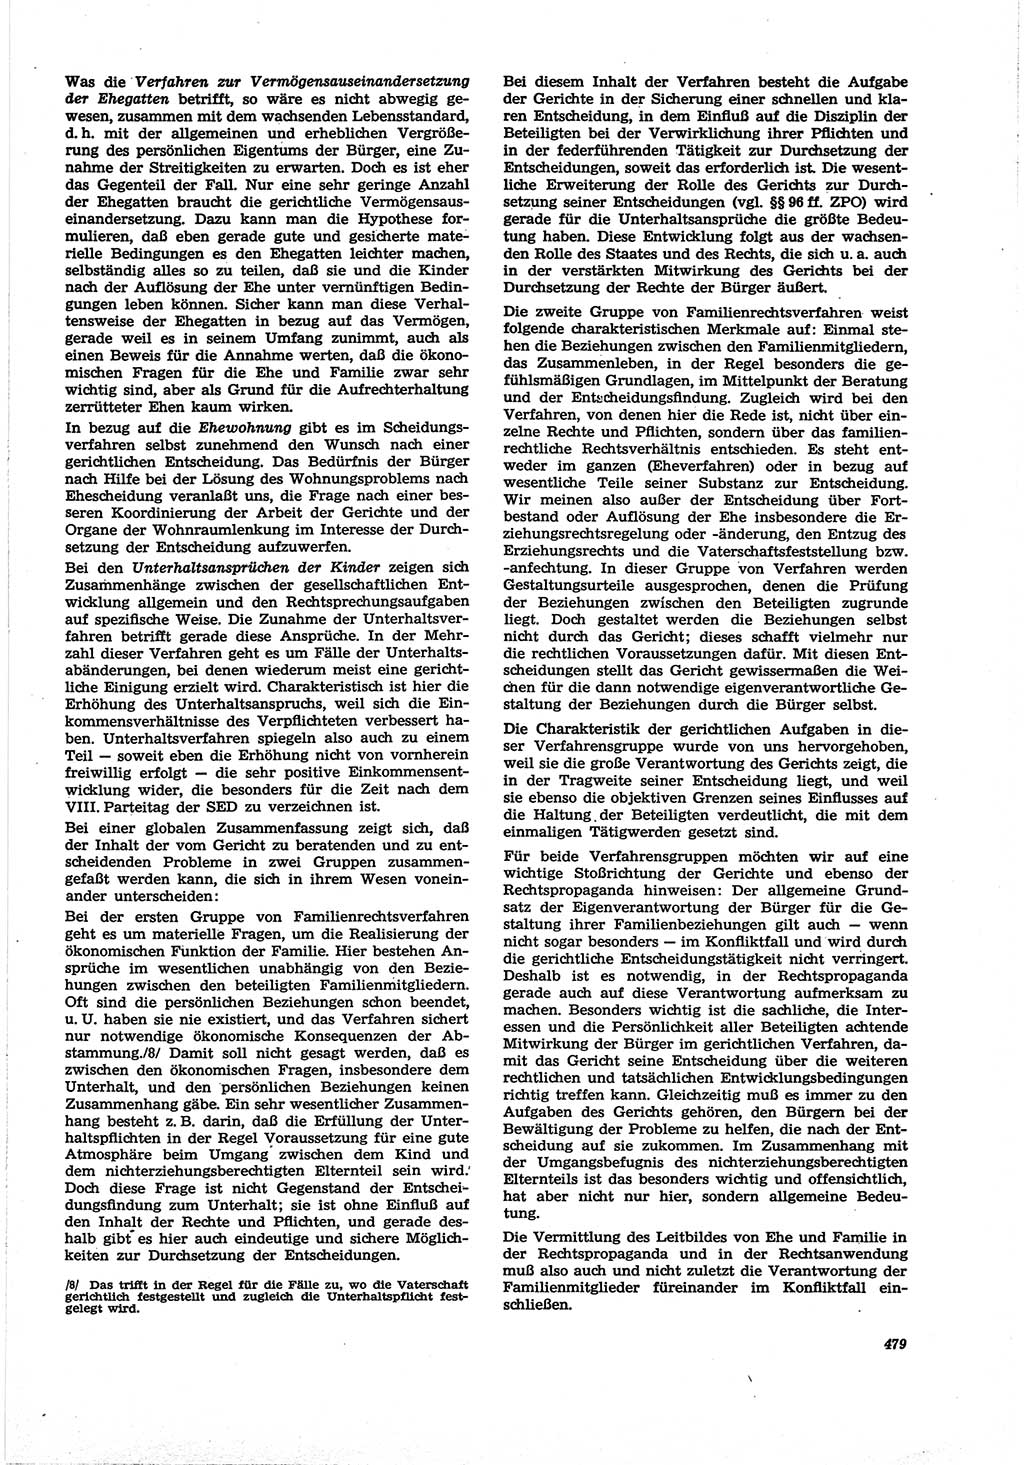 Neue Justiz (NJ), Zeitschrift für Recht und Rechtswissenschaft [Deutsche Demokratische Republik (DDR)], 30. Jahrgang 1976, Seite 479 (NJ DDR 1976, S. 479)